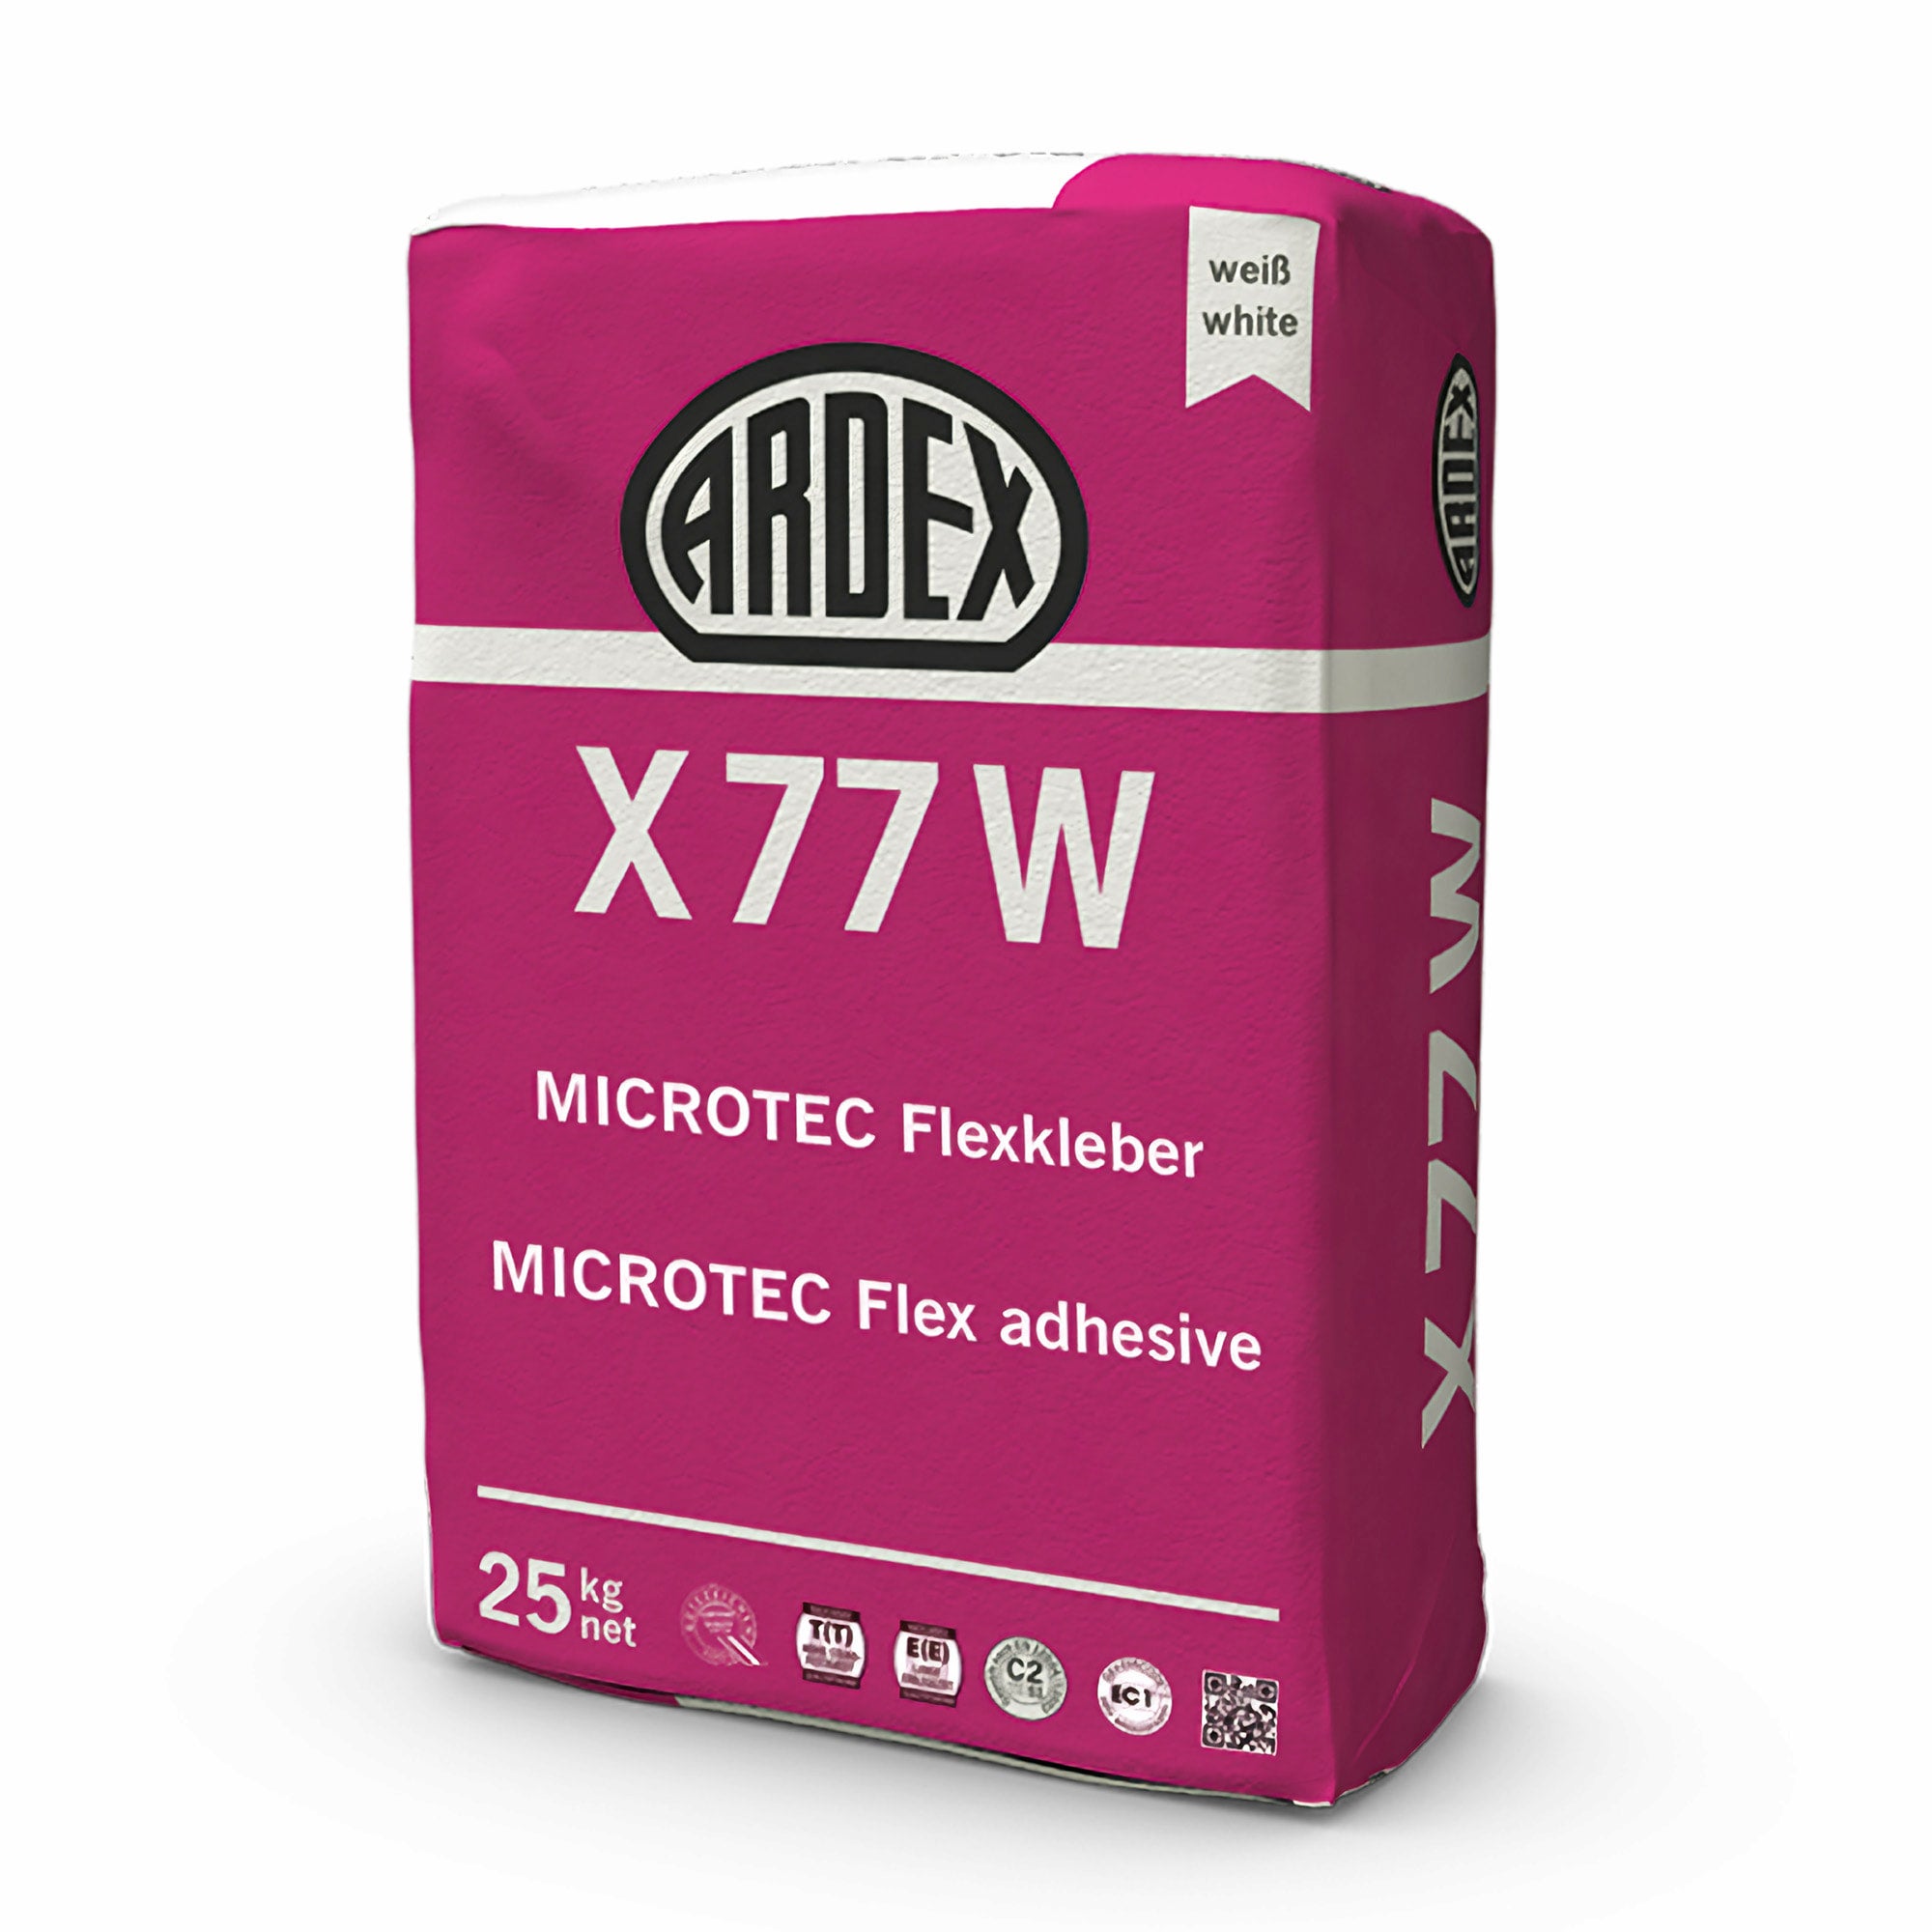 Az ARDEX X 77 W egy MICROTEC fehér flexragasztó fehércement bázison